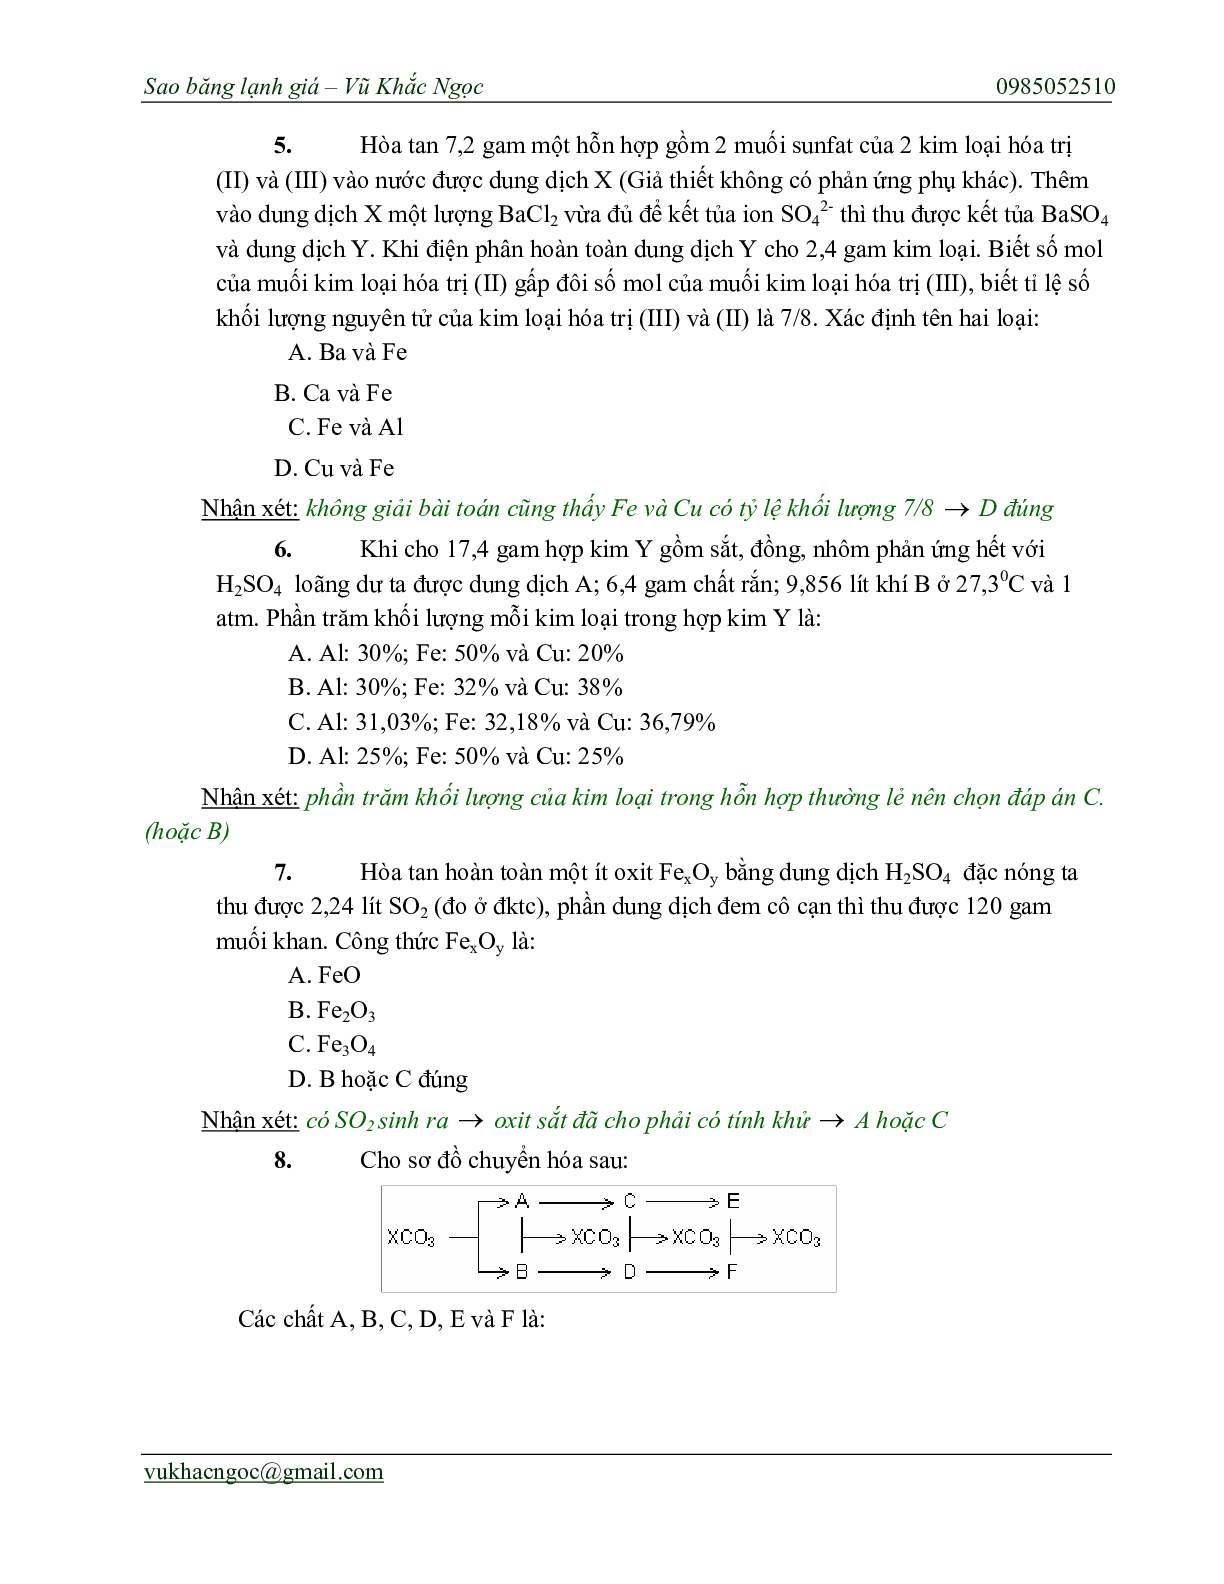 Chiến thuật chọn ngẫu nhiên trong bài thi trắc nghiệm môn Hóa học thi THPT Quốc Gia (trang 8)